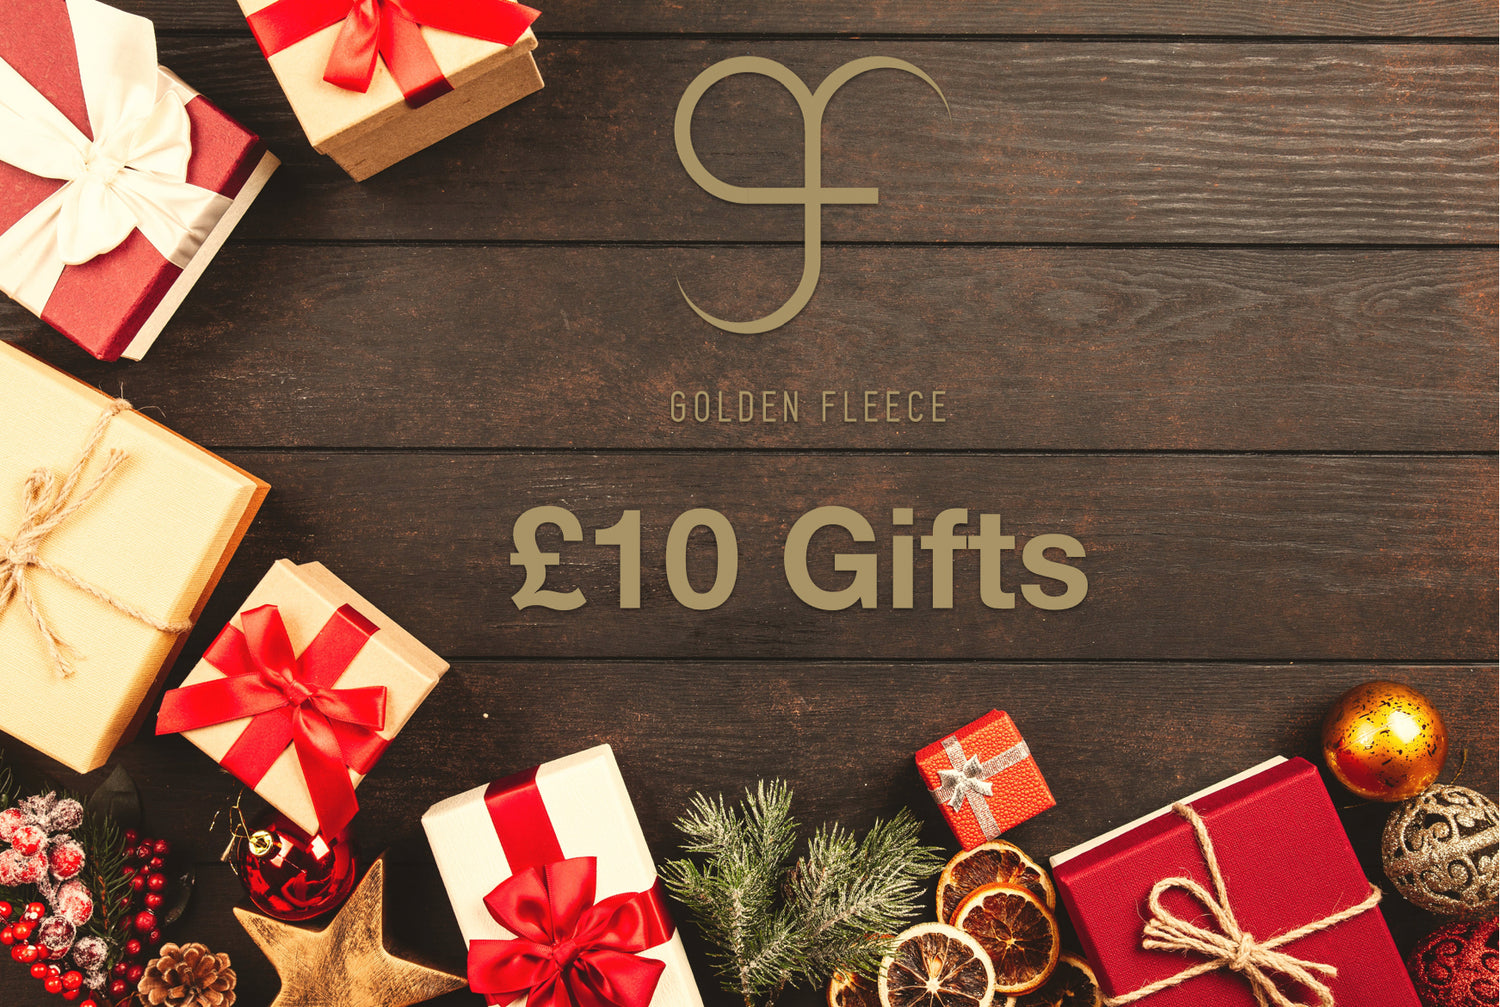 £10 Christmas Gifts